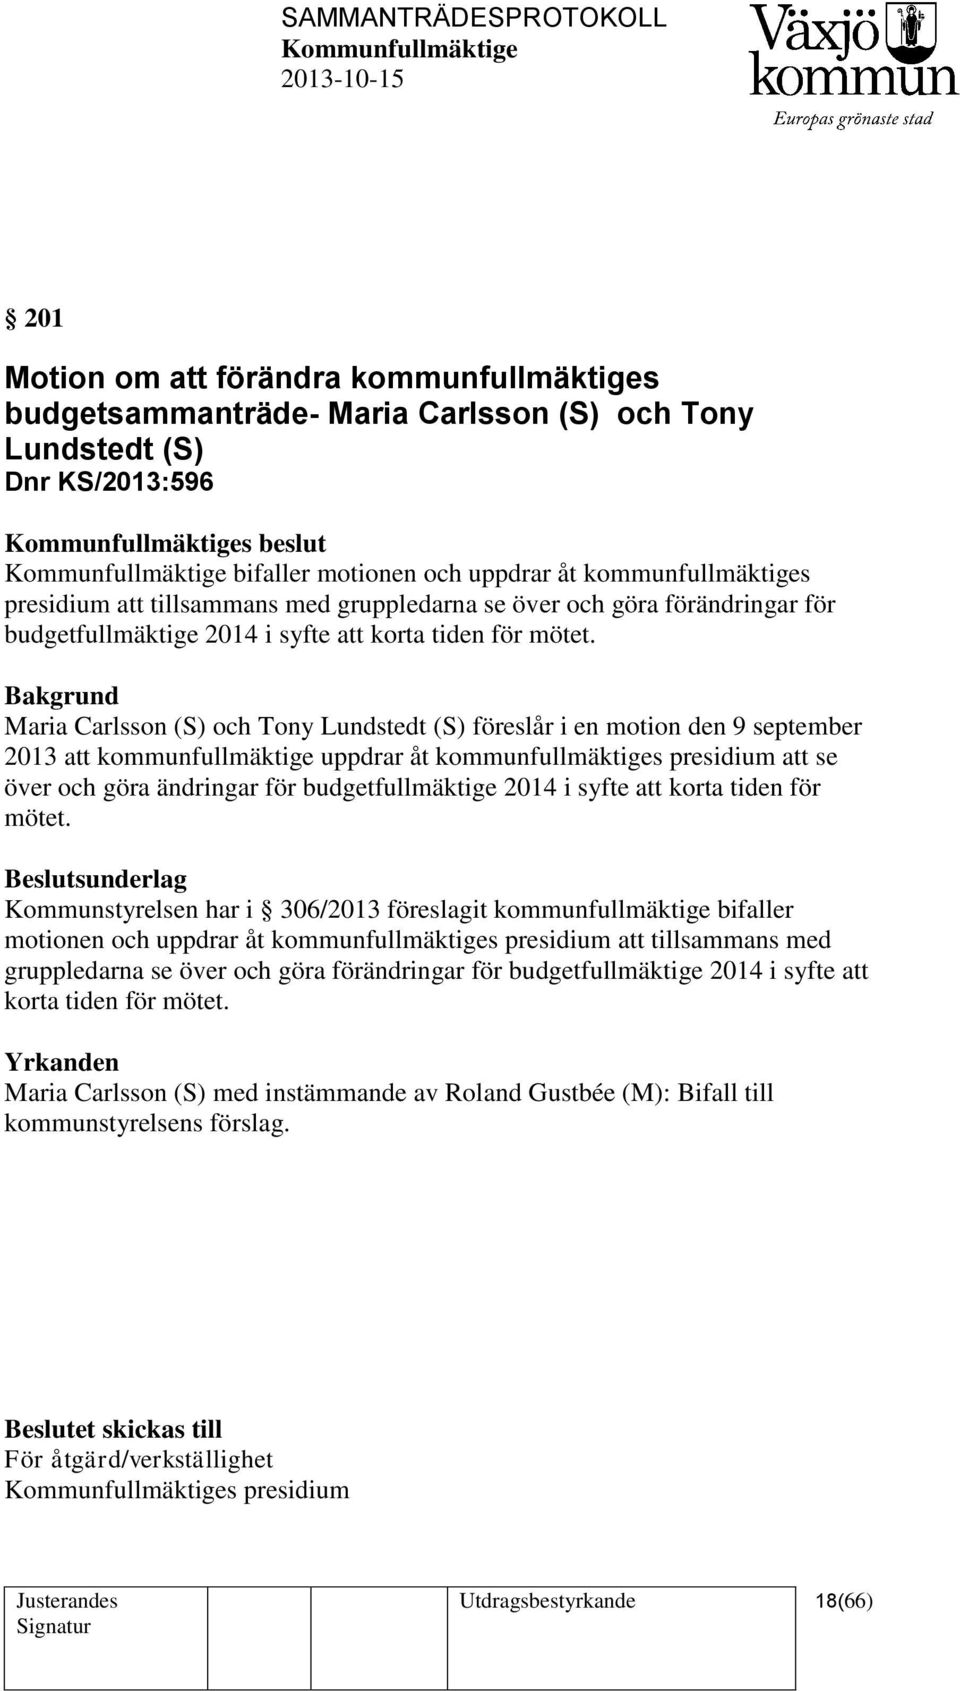 Maria Carlsson (S) och Tony Lundstedt (S) föreslår i en motion den 9 september 2013 att kommunfullmäktige uppdrar åt kommunfullmäktiges presidium att se över och göra ändringar för budgetfullmäktige